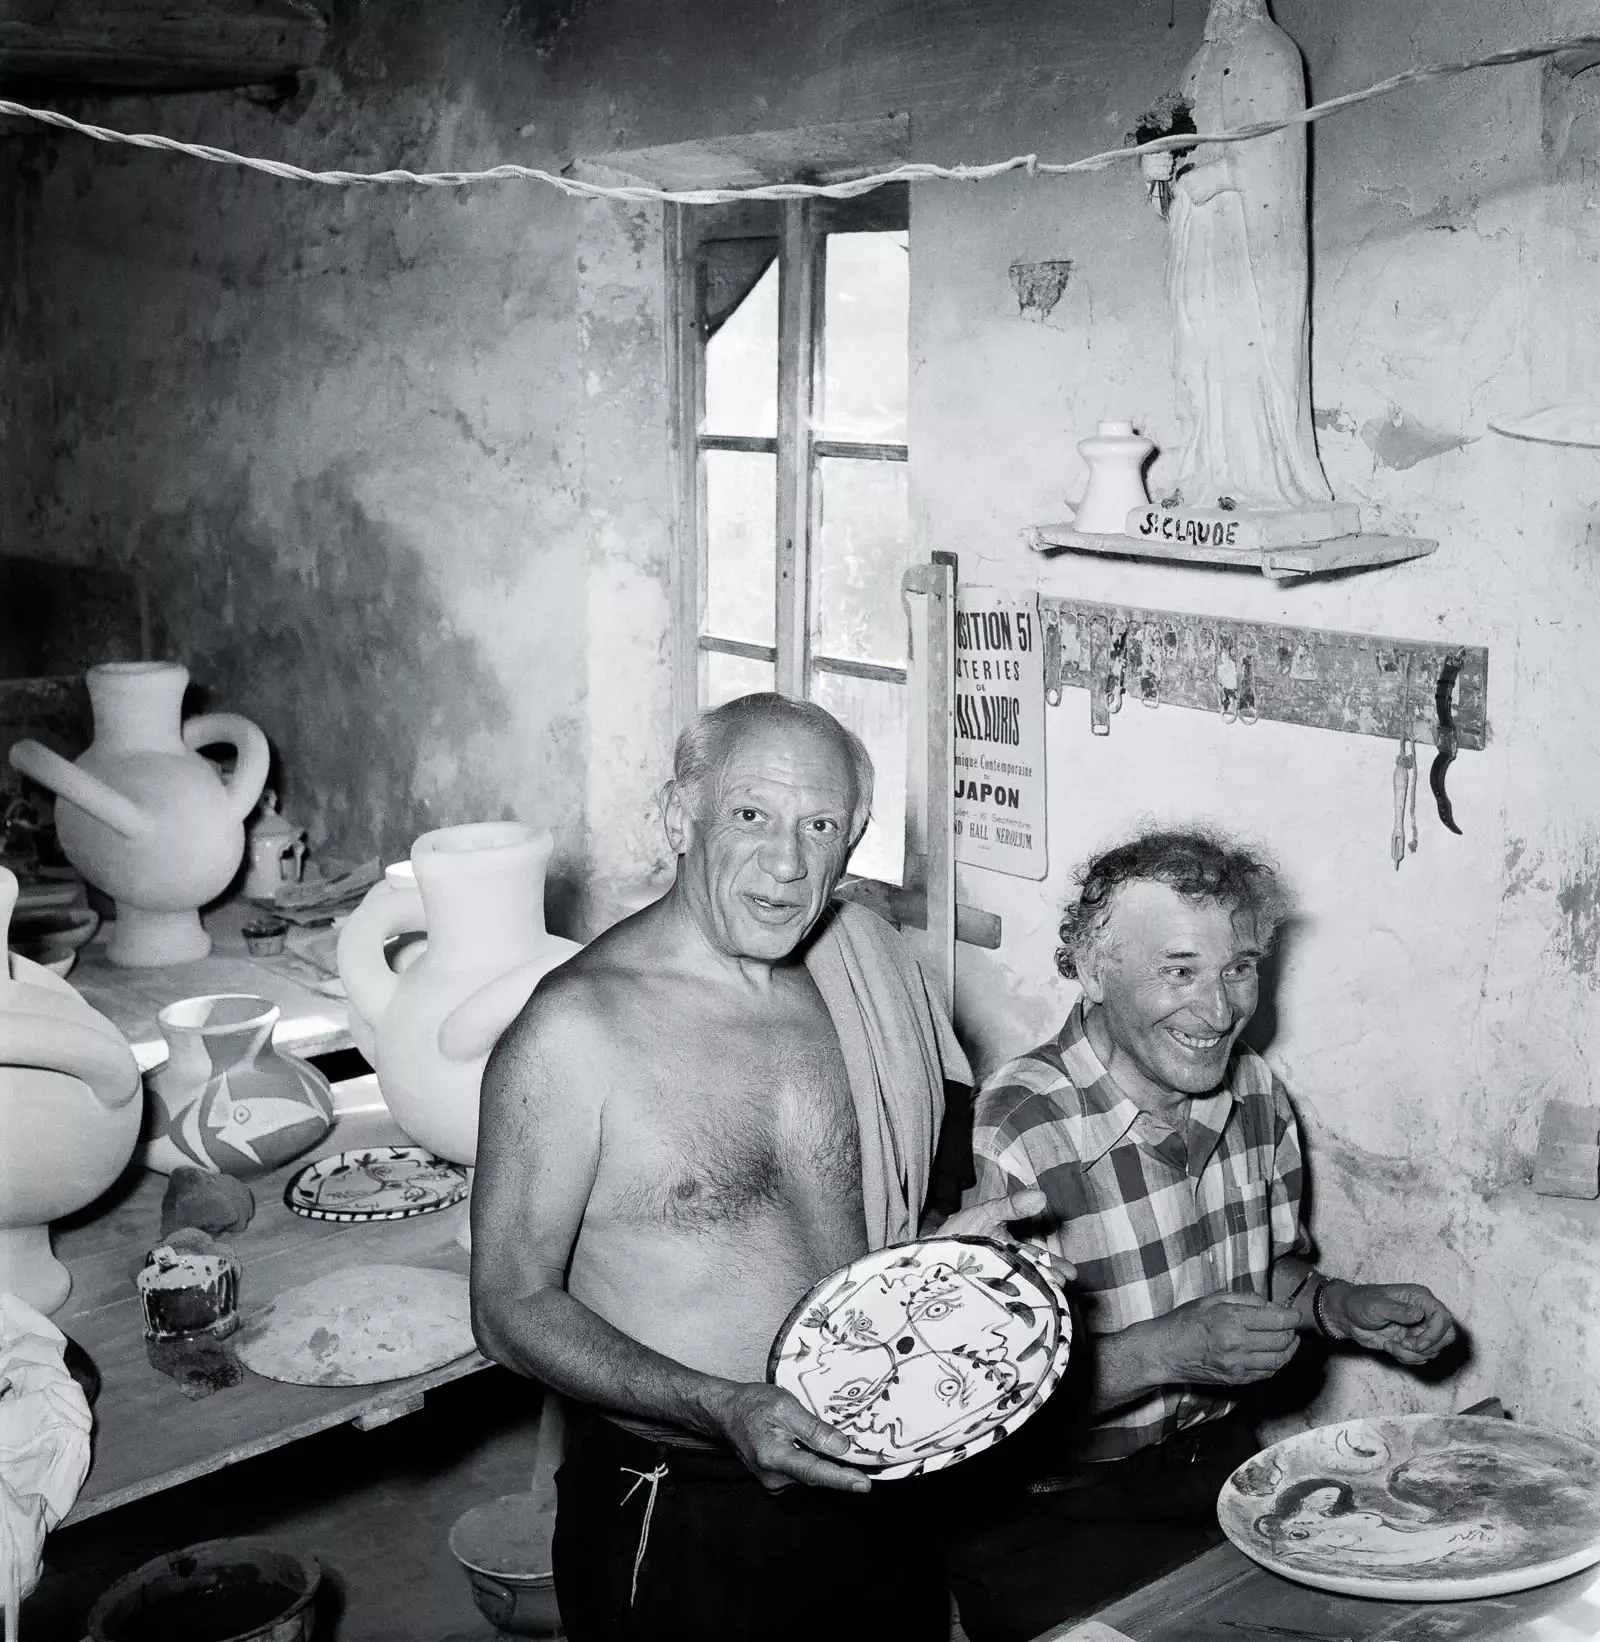 Пабло Пикассо и Марк Шагал в мастерской Madoura в Валлорисе, 1948 г.